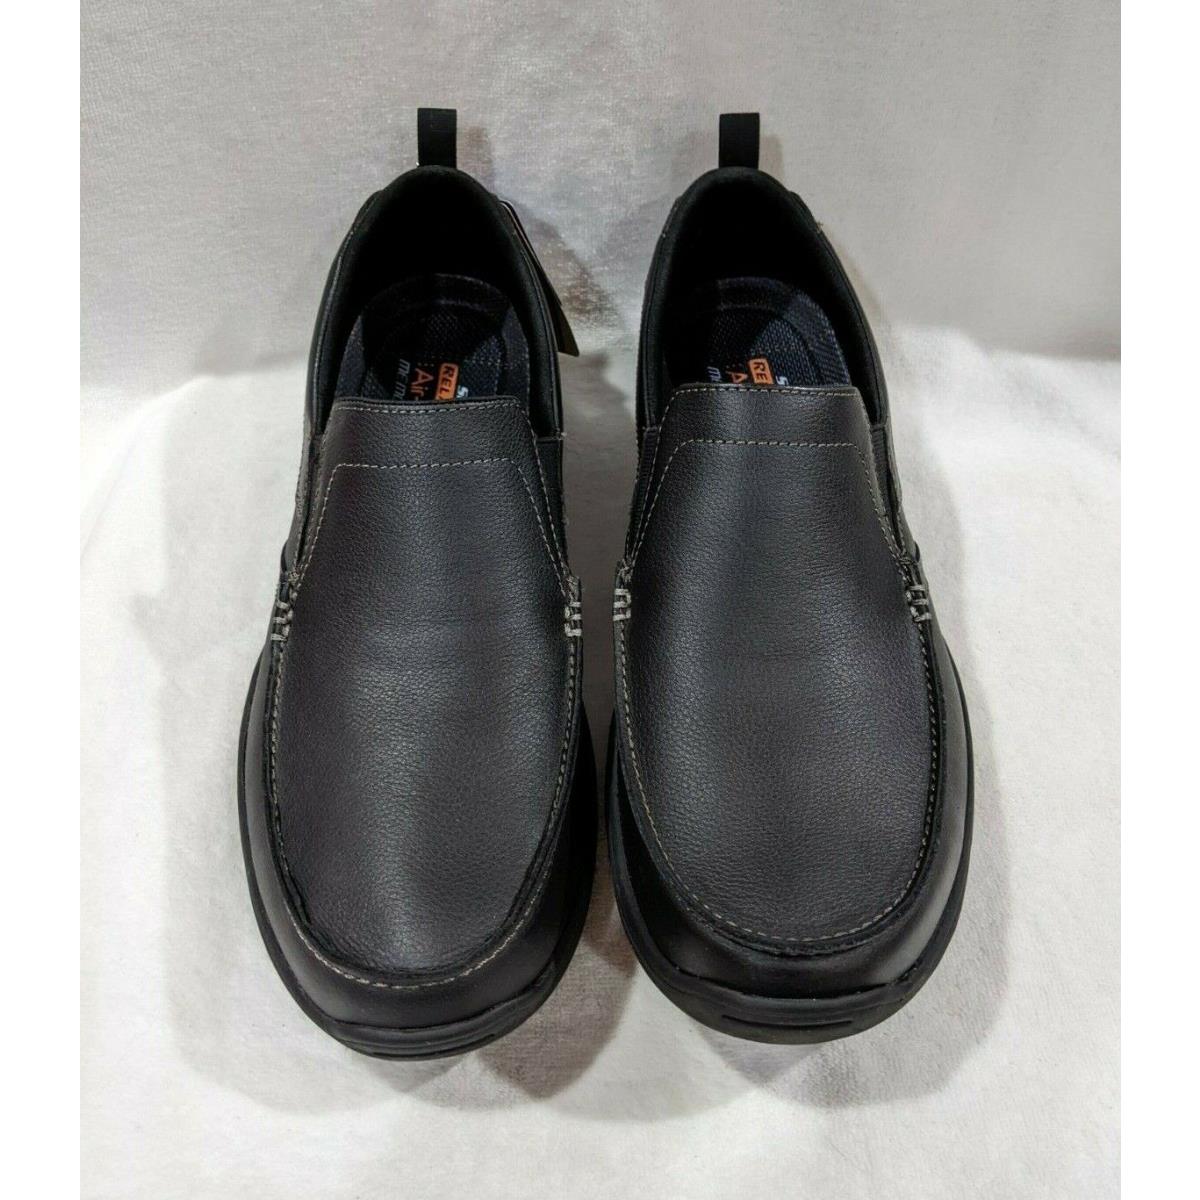 Skechers shoes Harper Forde - Black 1